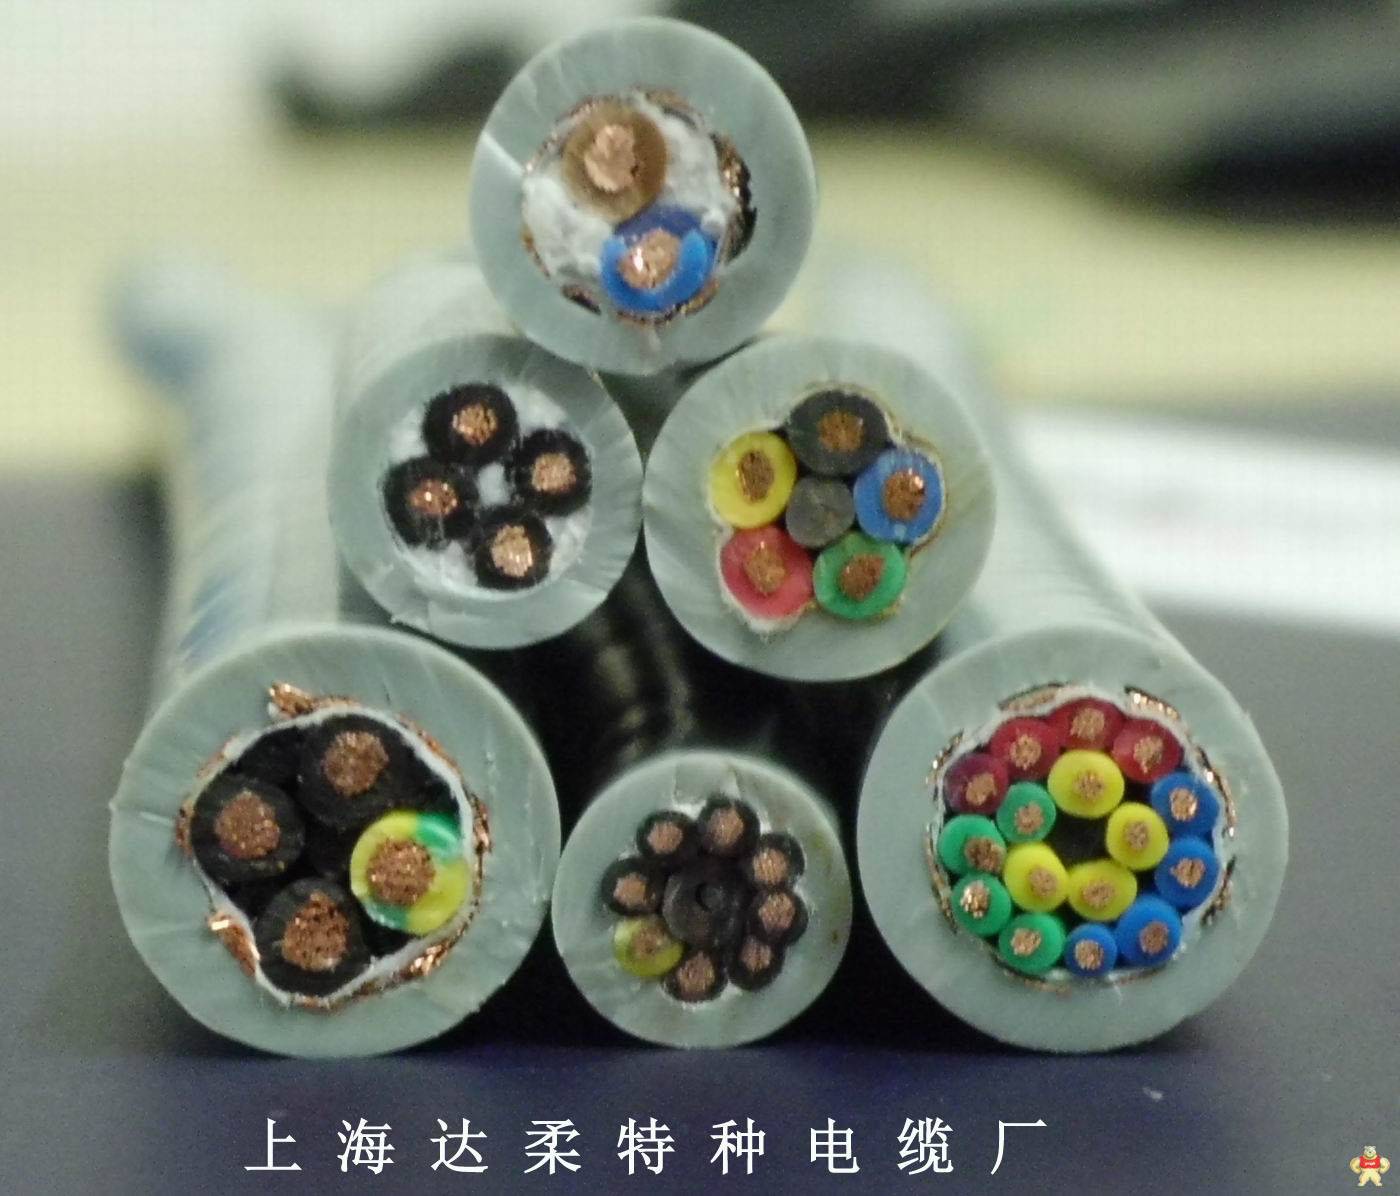 上海达柔供应耐低温电缆抗冻电缆 耐低温电缆,抗冻电缆,-60度低温电缆,-40度低温电缆